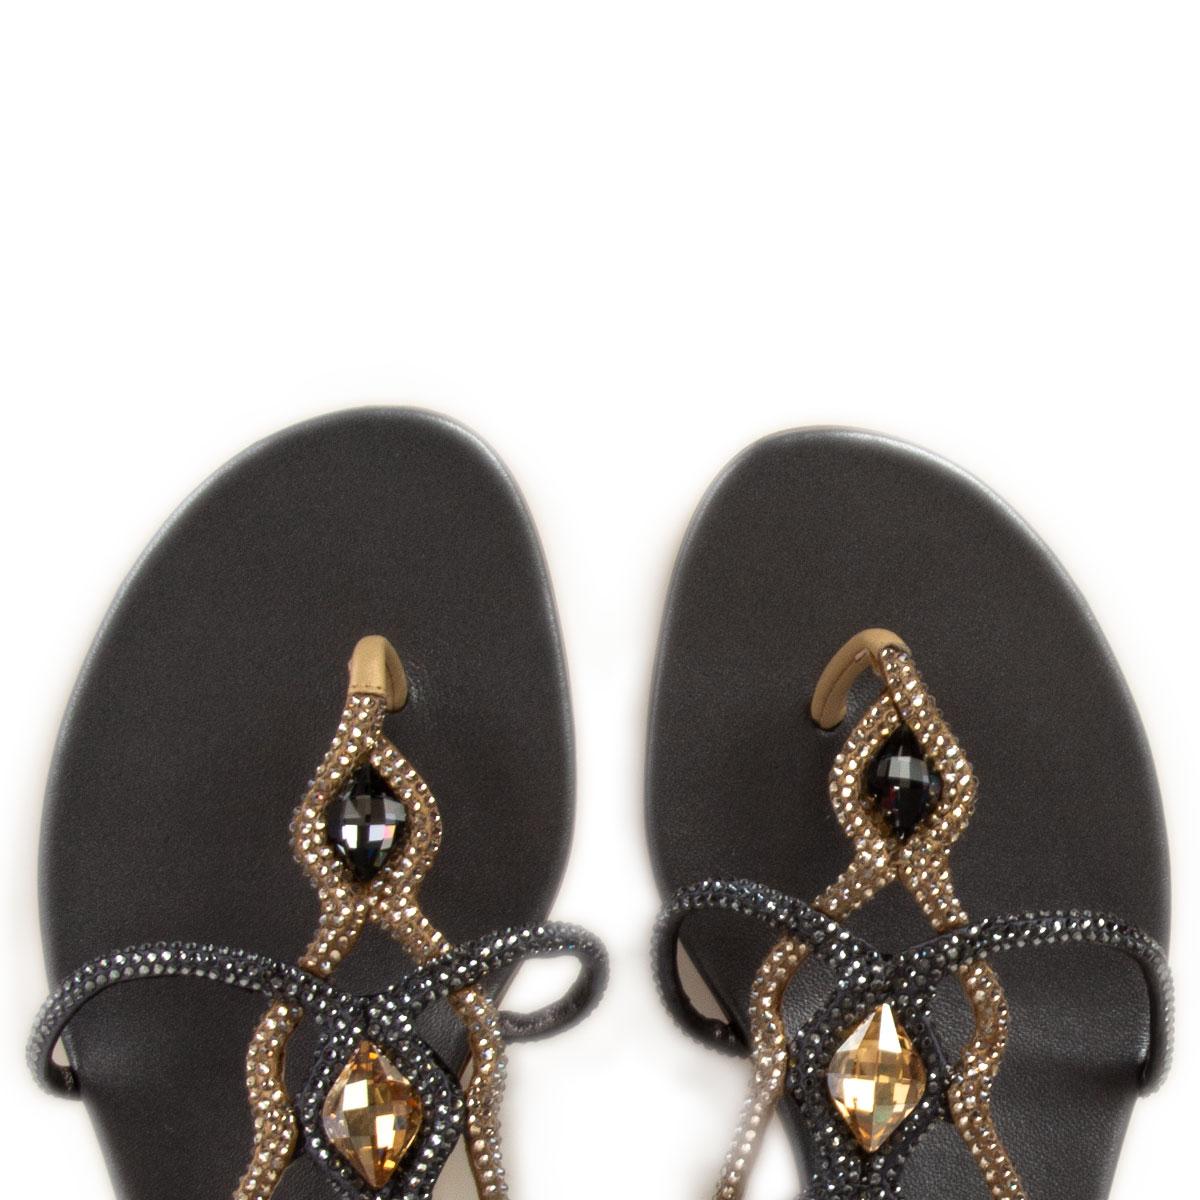 RENE CAOVILLA schwarz-goldene flache Sandalen mit RHINESTONE-Verzierung, Schuhe 36,5 Damen im Angebot